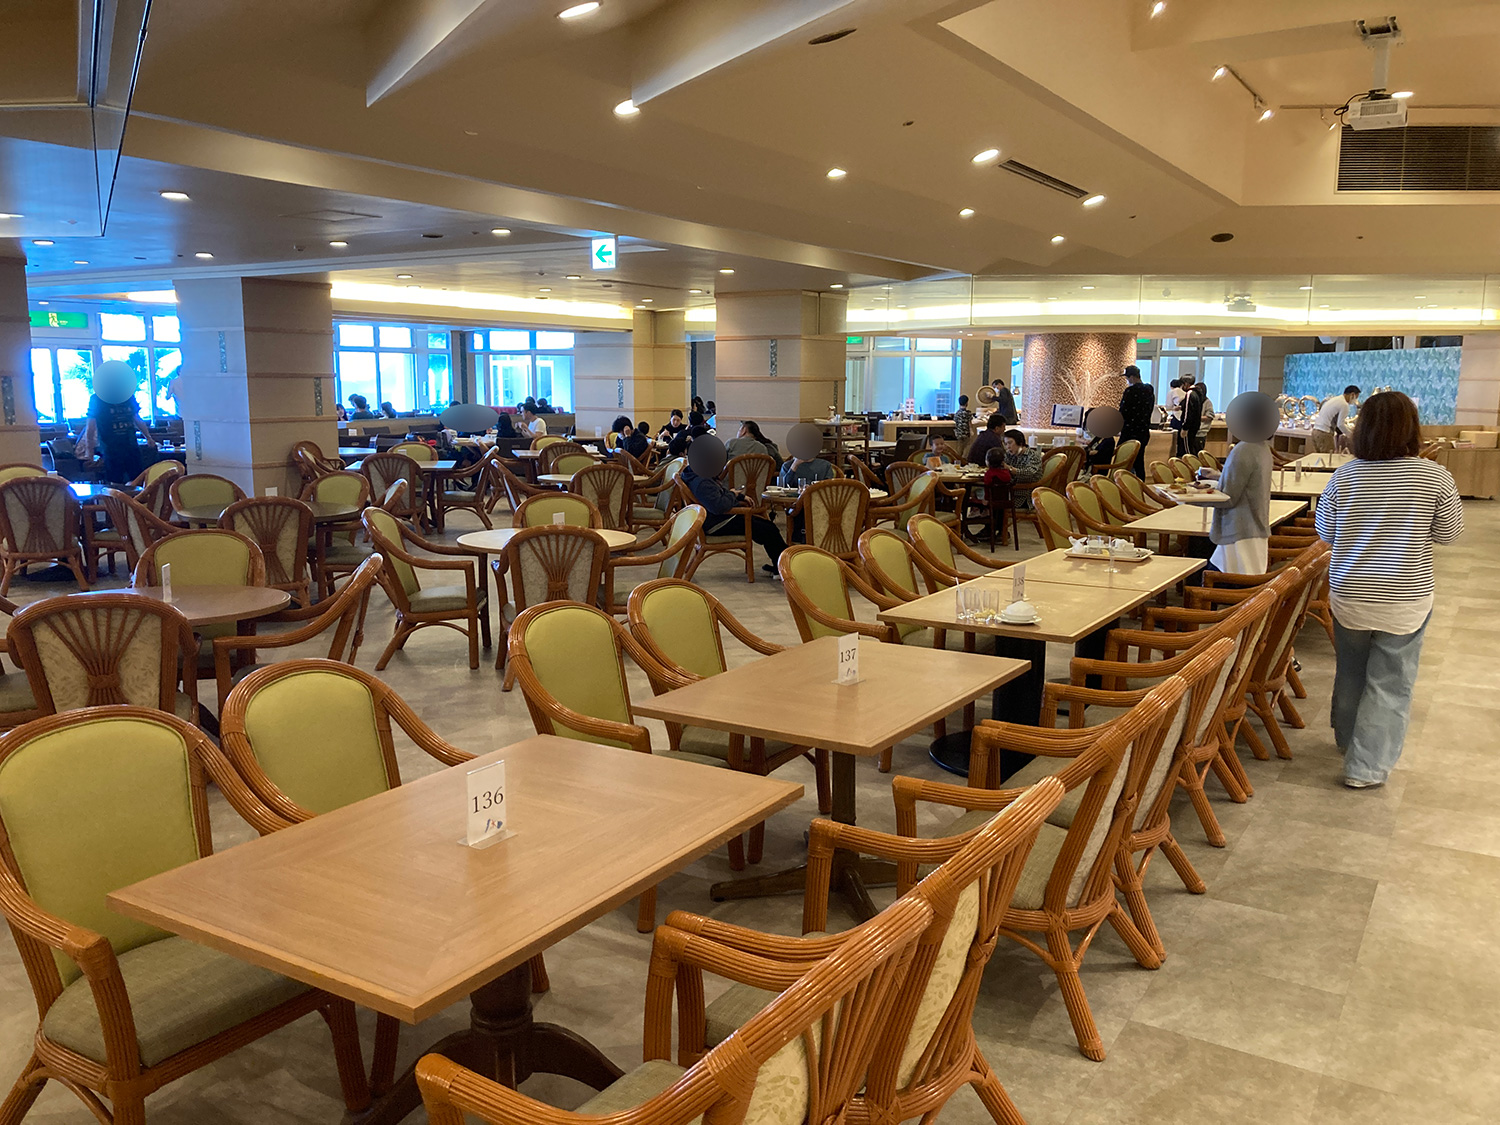 ランチの会場も夕食同様に<a href="https://www.rizzan.co.jp/restaurant/breakfast.html">シーサイドレストラン谷茶ベイ</a>でした。